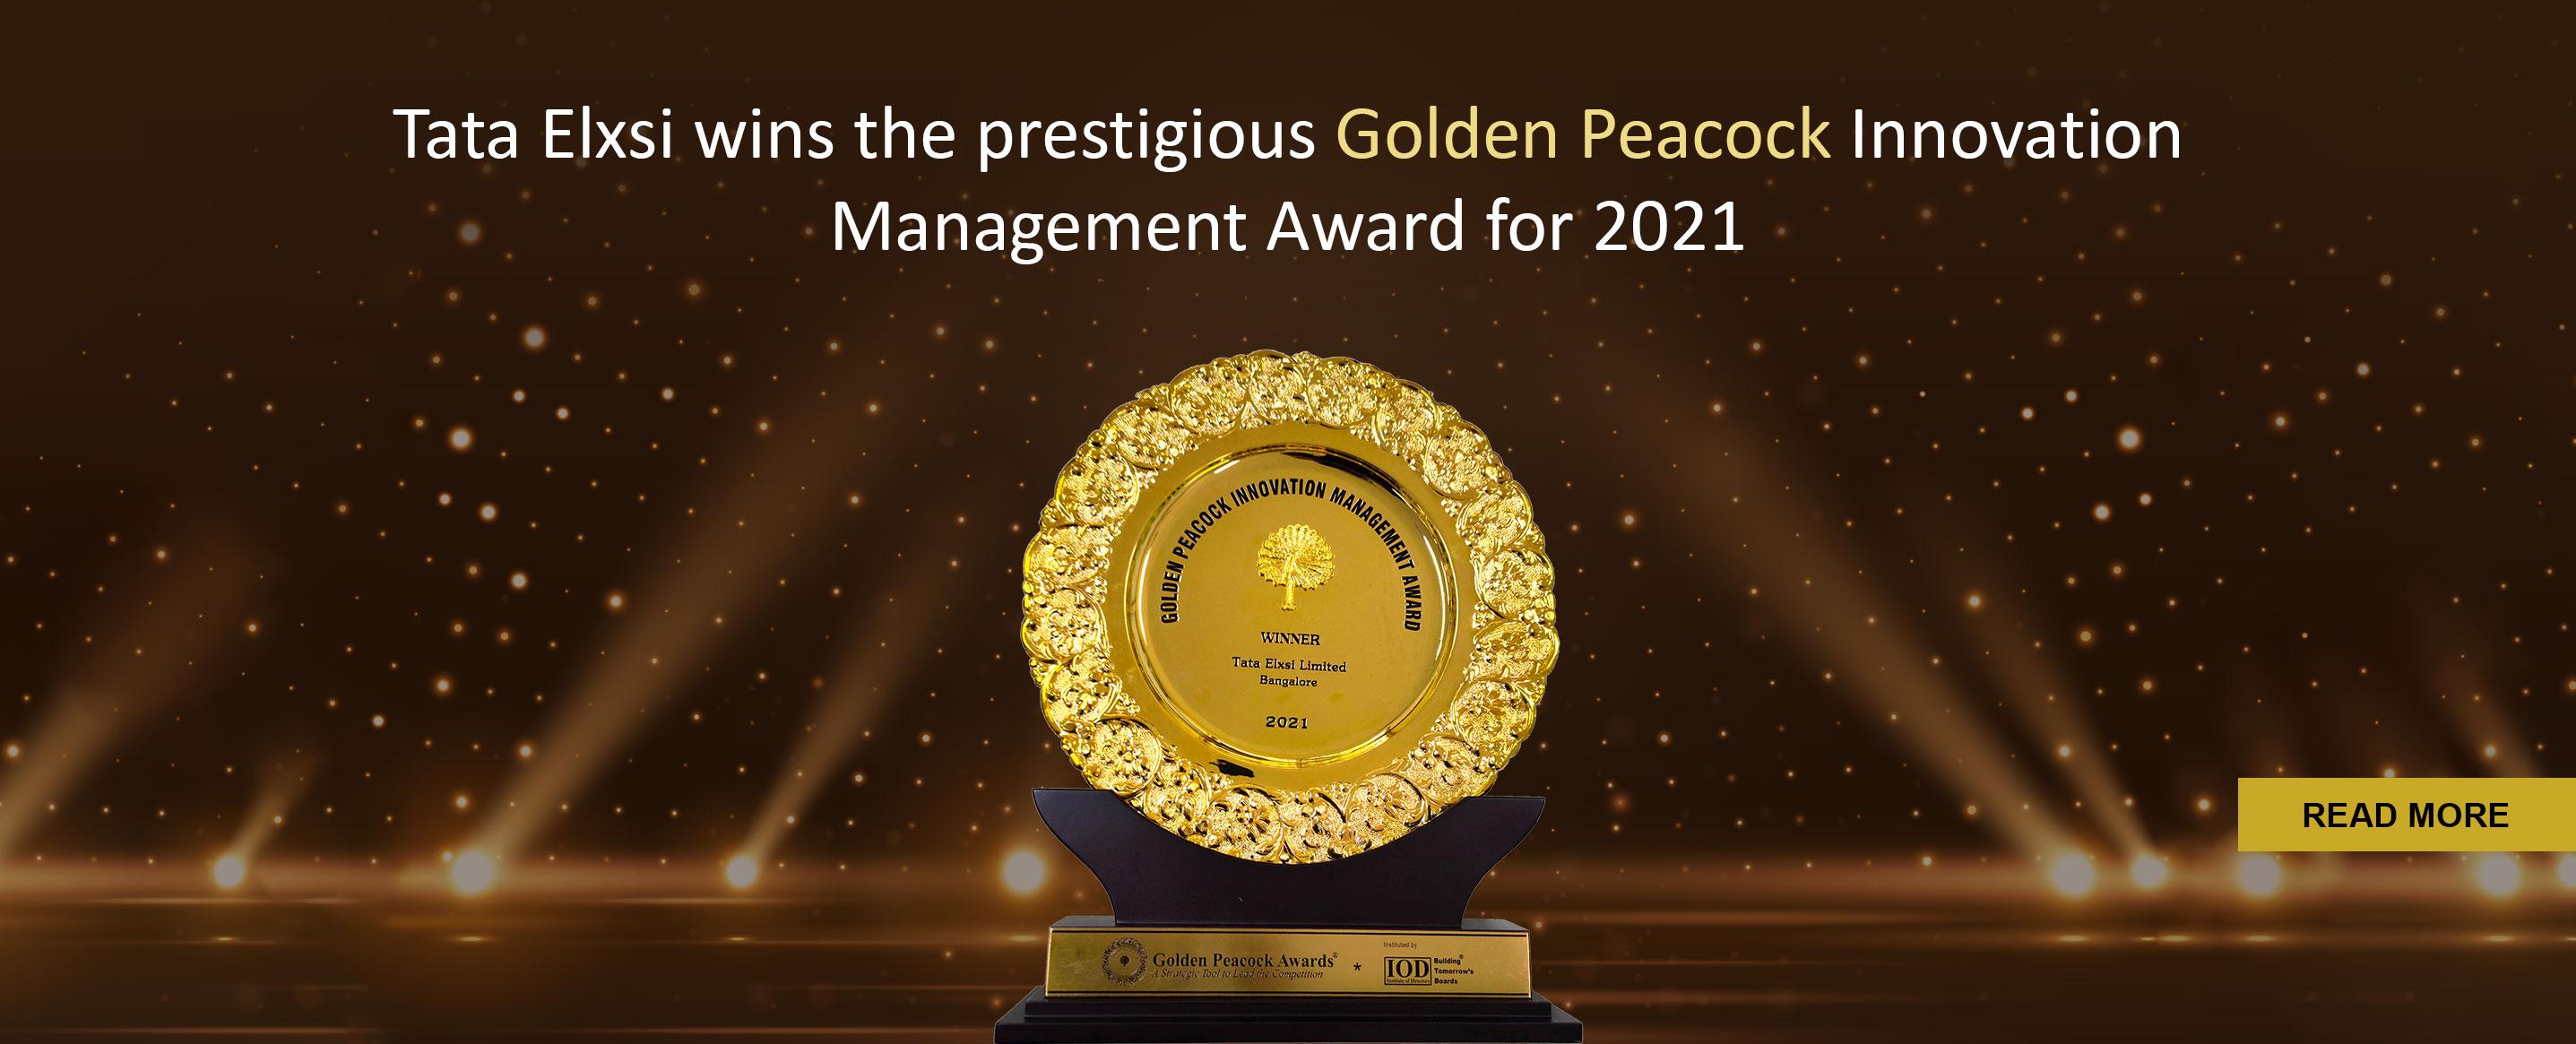 Tata Elxsi wins the prestigious Golden Peacock Innovation Management Award for 2021